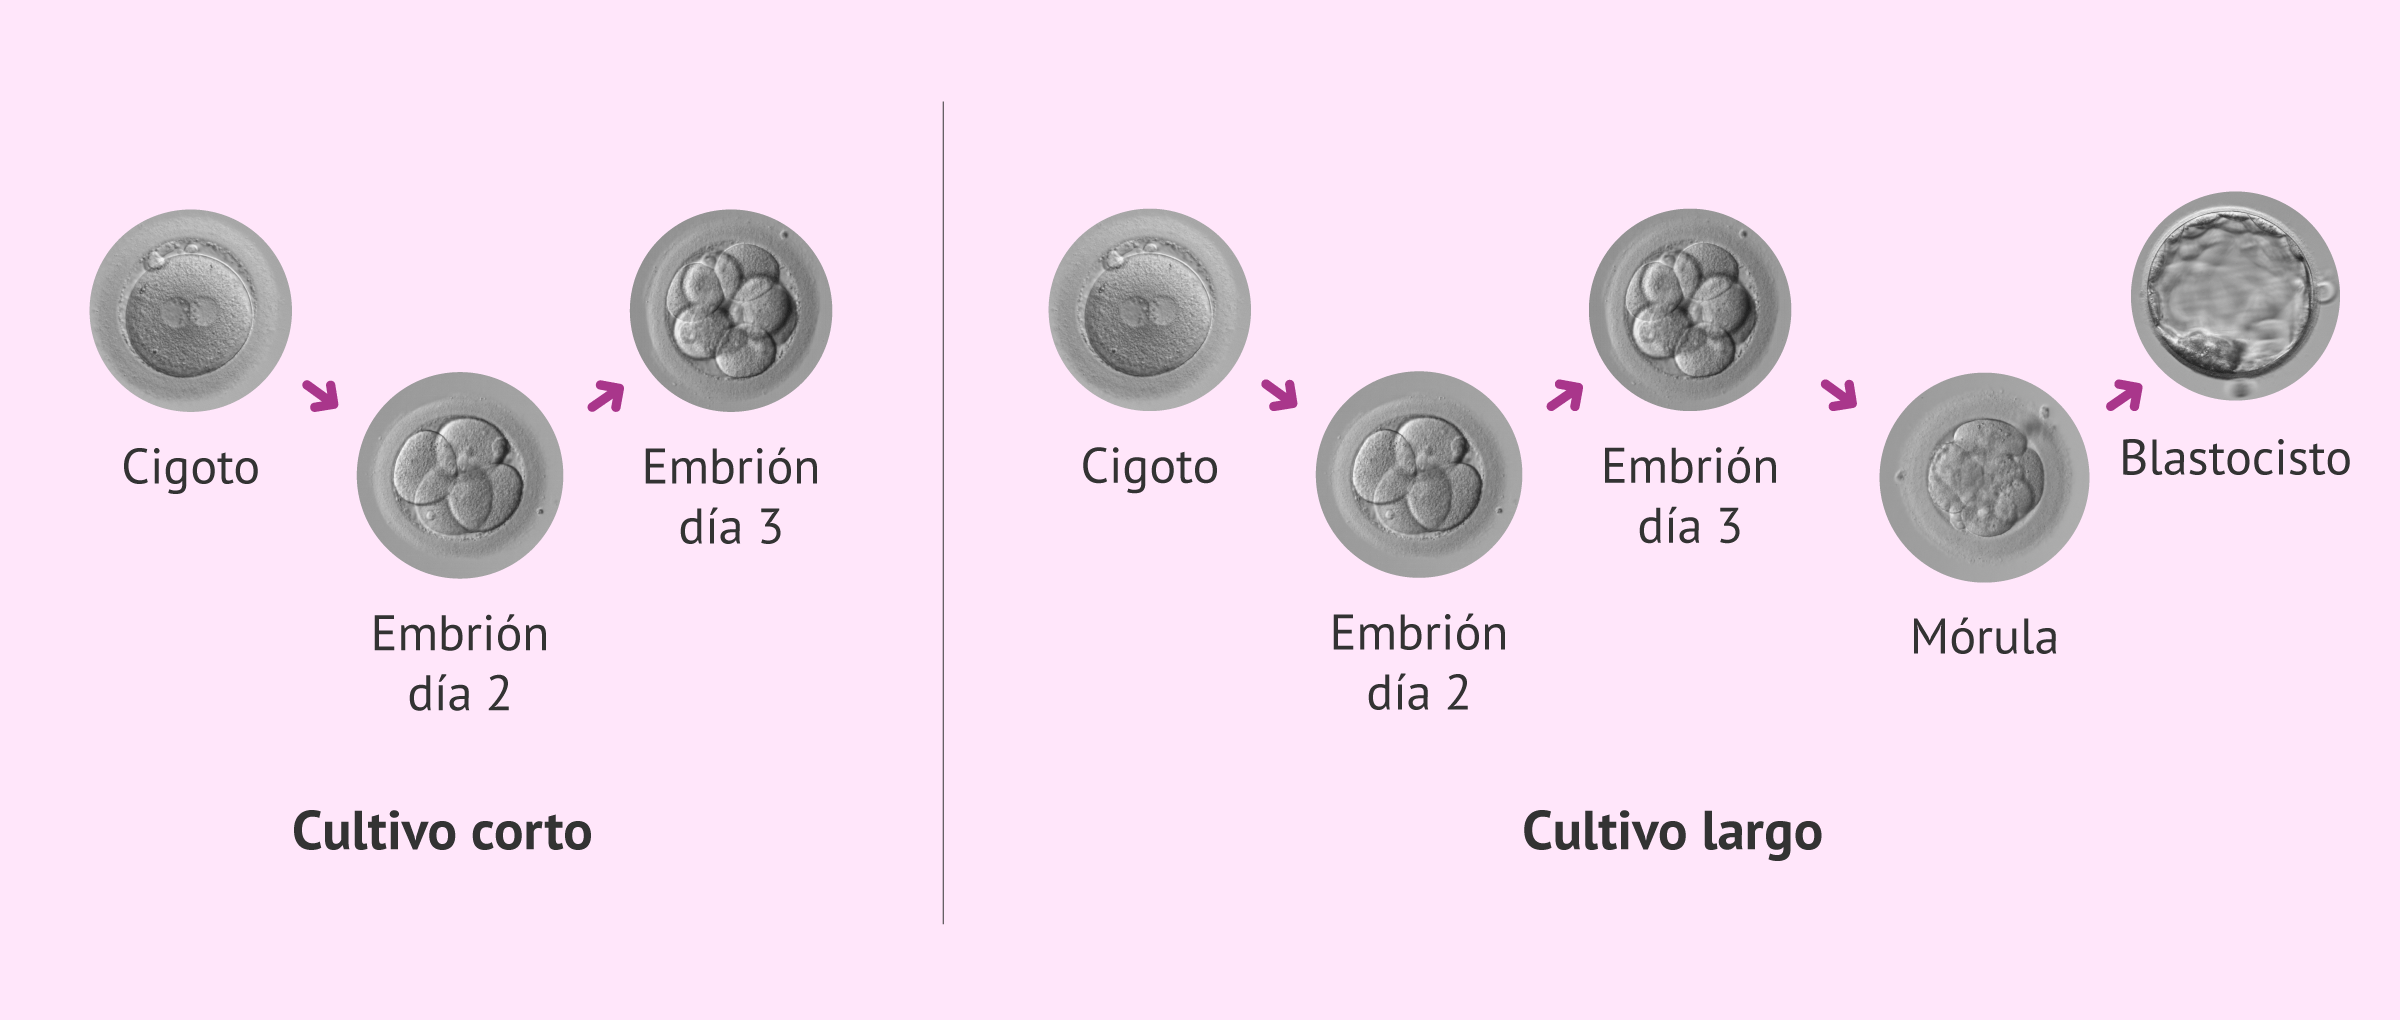 ¿Qué tipos de cultivos embrionarios existen?